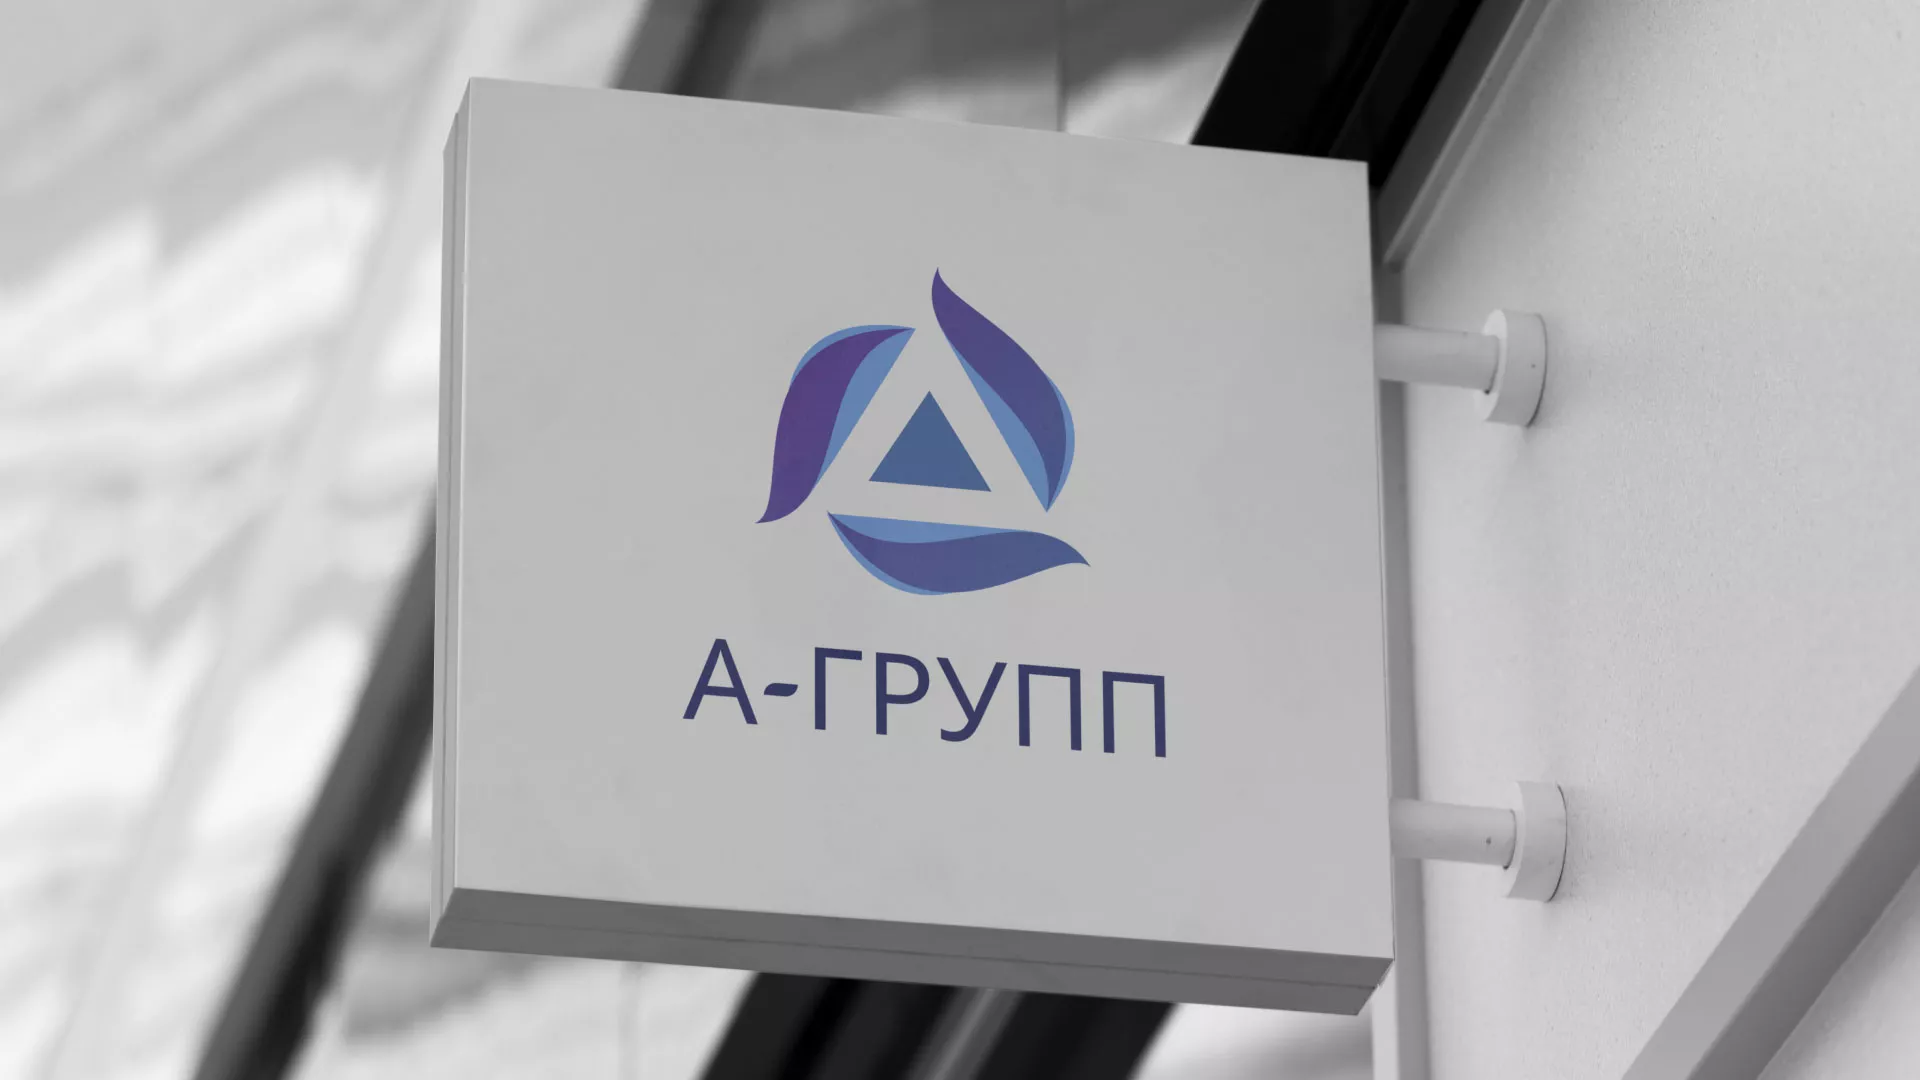 Создание логотипа компании «А-ГРУПП» в Шали